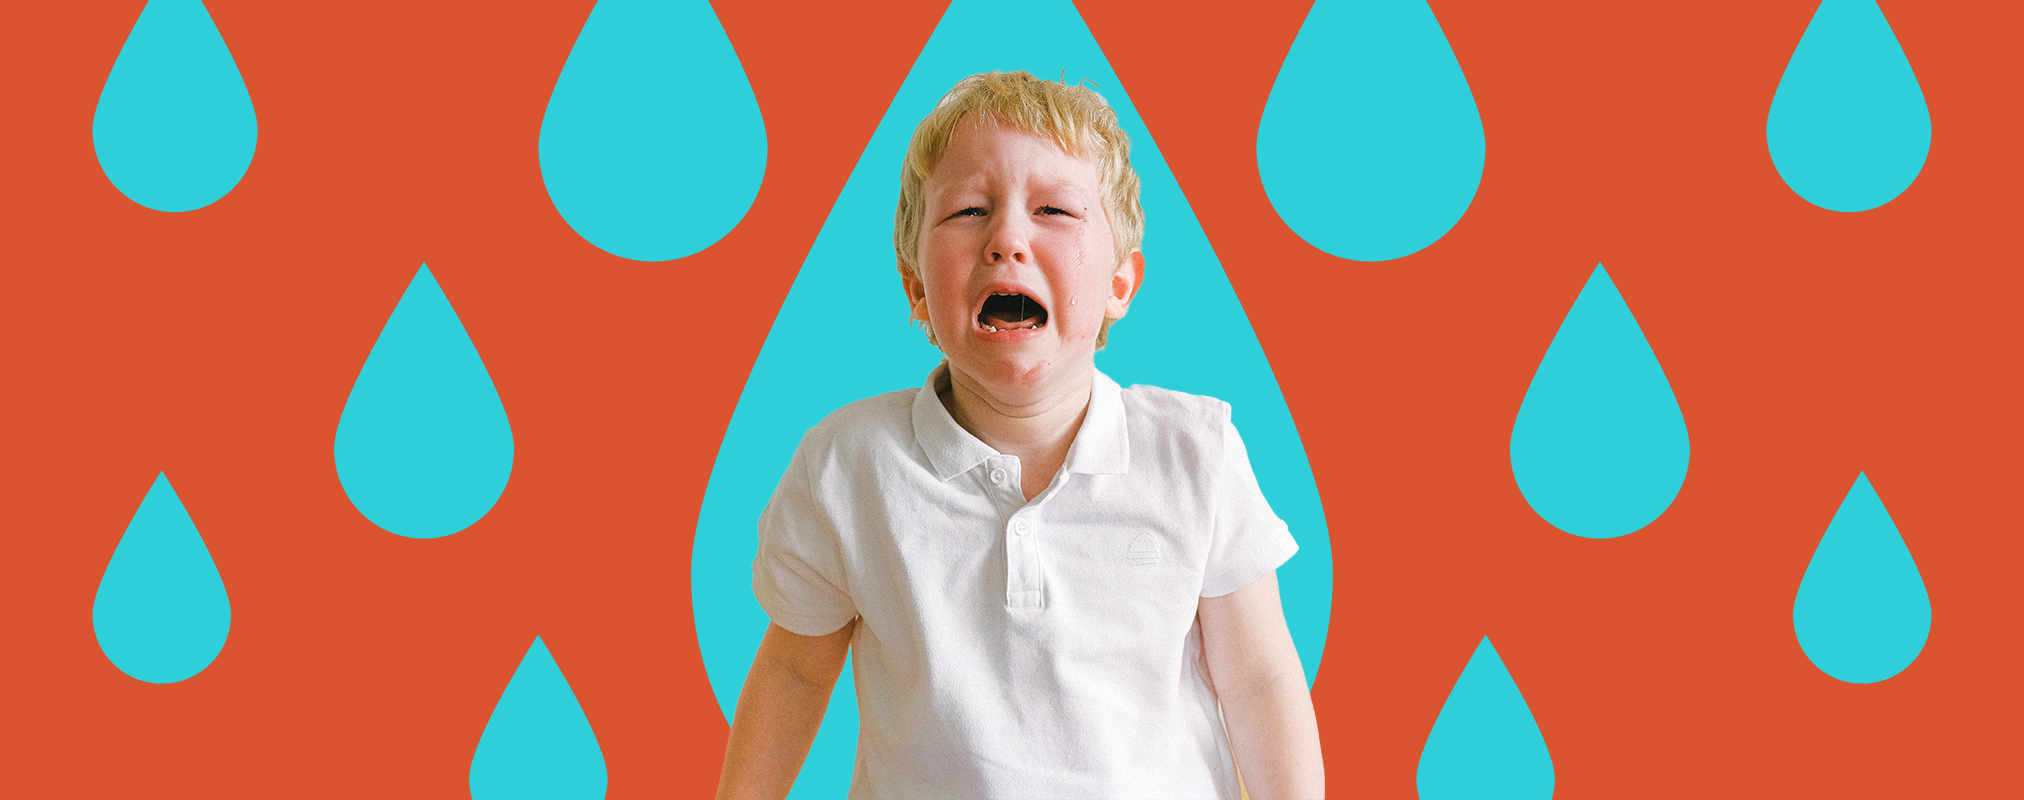 Ребёнок закатывает истерики: что делать родителям?